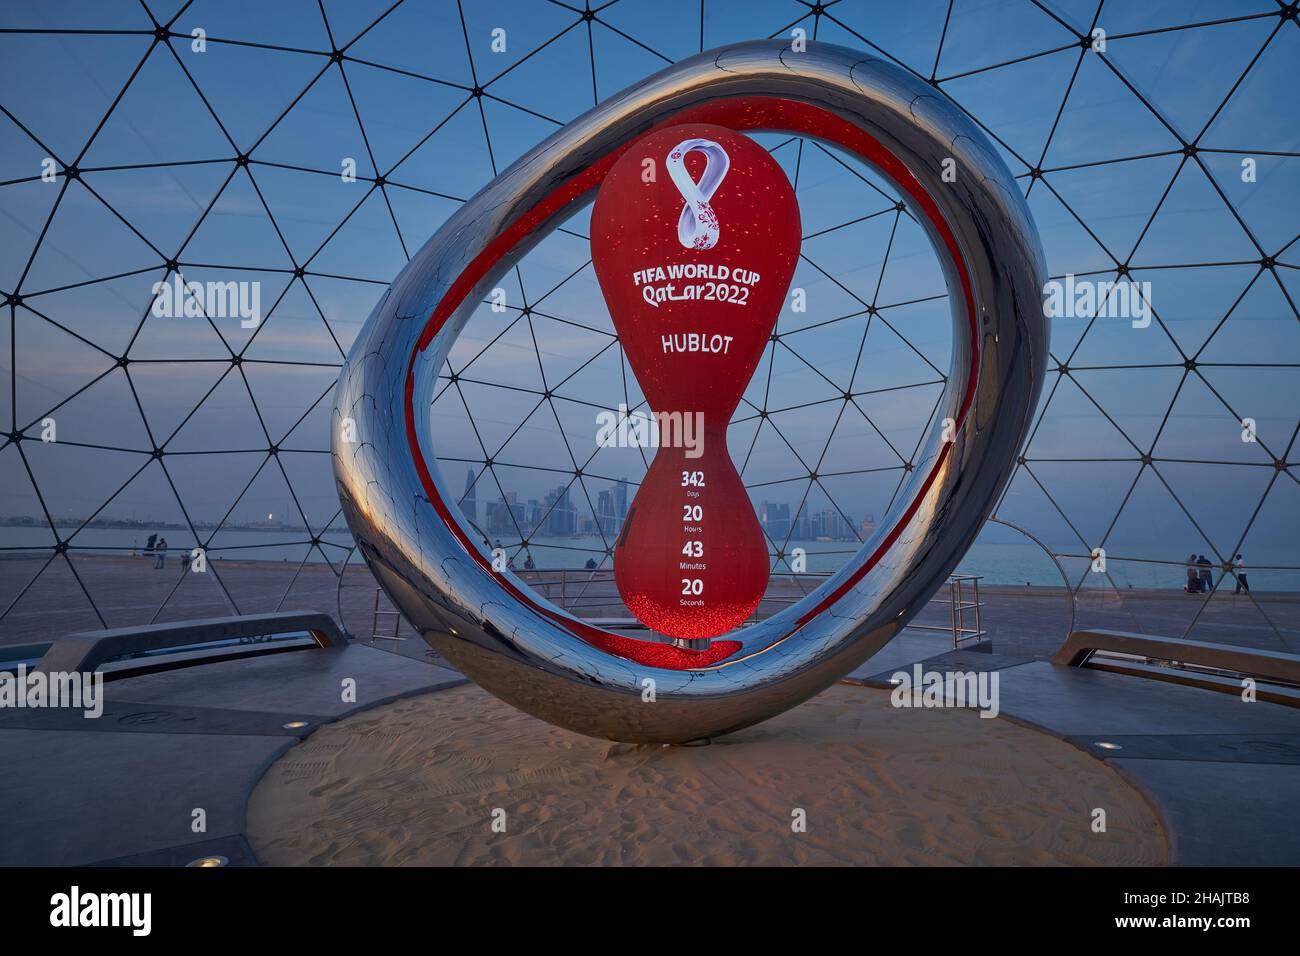 L'Official Countdown Clock della Coppa del mondo FIFA Qatar 2022, powered by Hublot, è stato presentato domenica 21 novembre a Doha Qatar Foto Stock